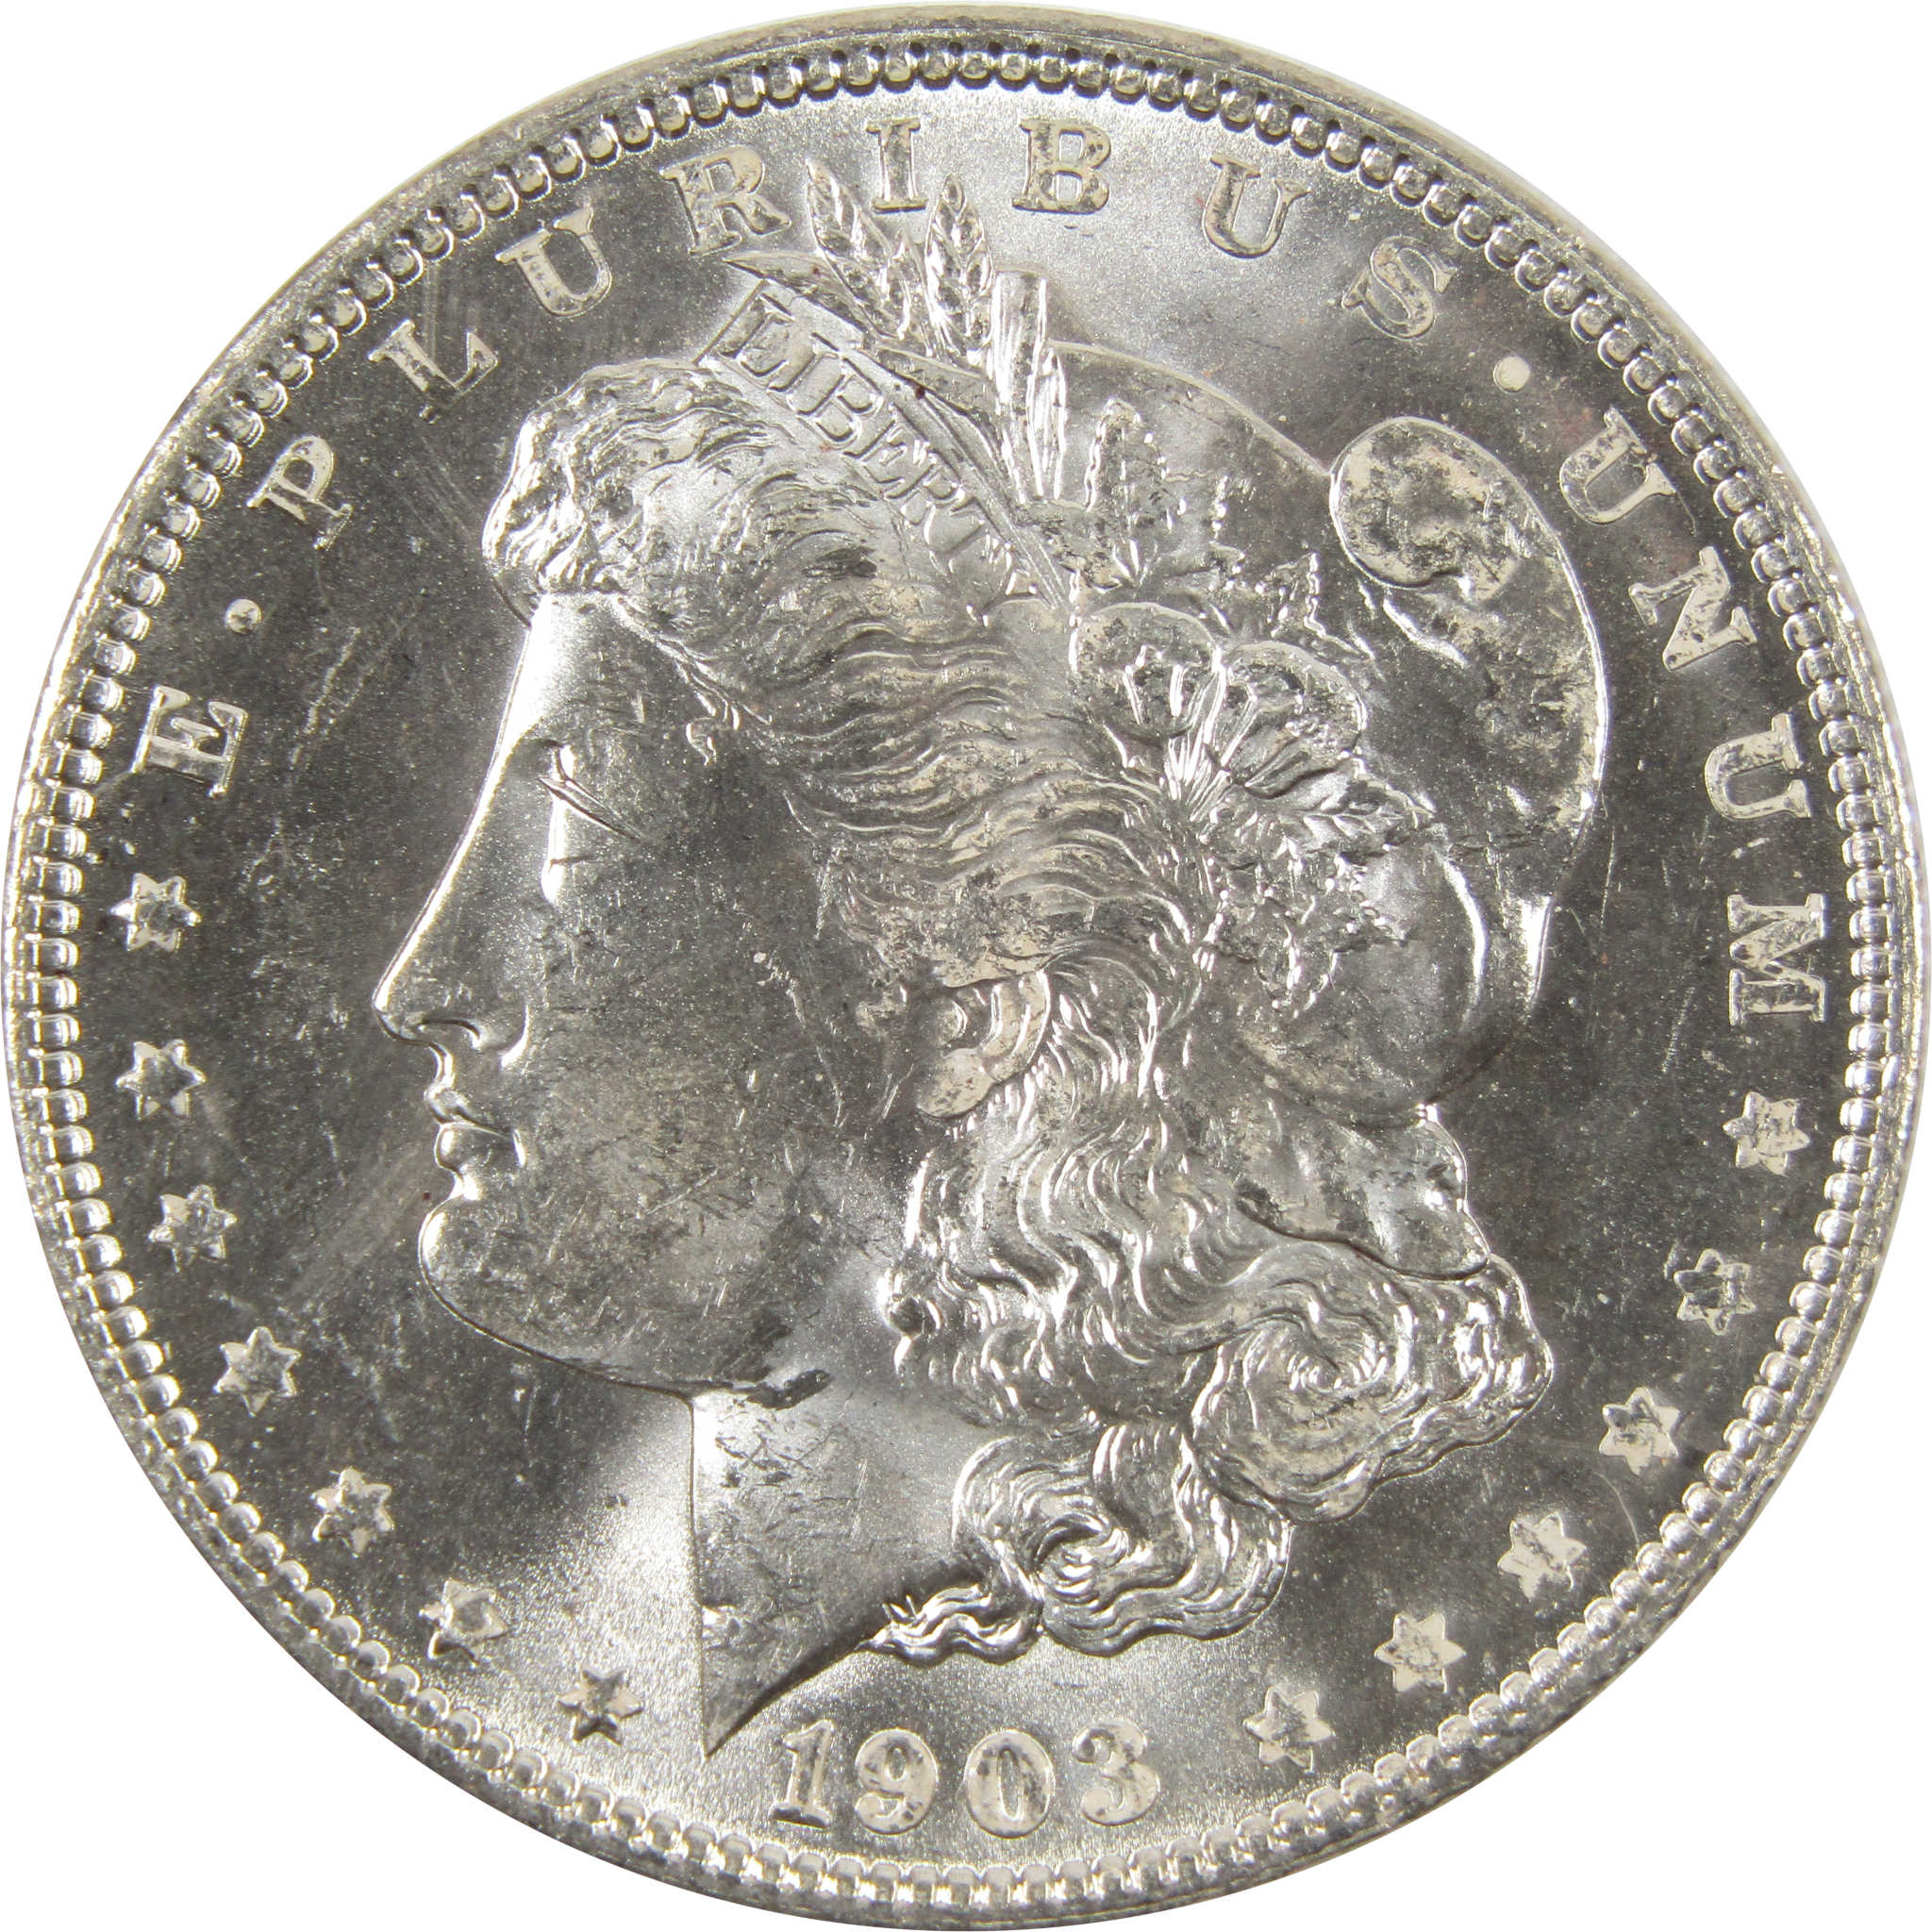 1903 O Morgan Dollar BU Choice Uncirculated 90% Silver $1 SKU:I7513 - Morgan coin - Morgan silver dollar - Morgan silver dollar for sale - Profile Coins &amp; Collectibles